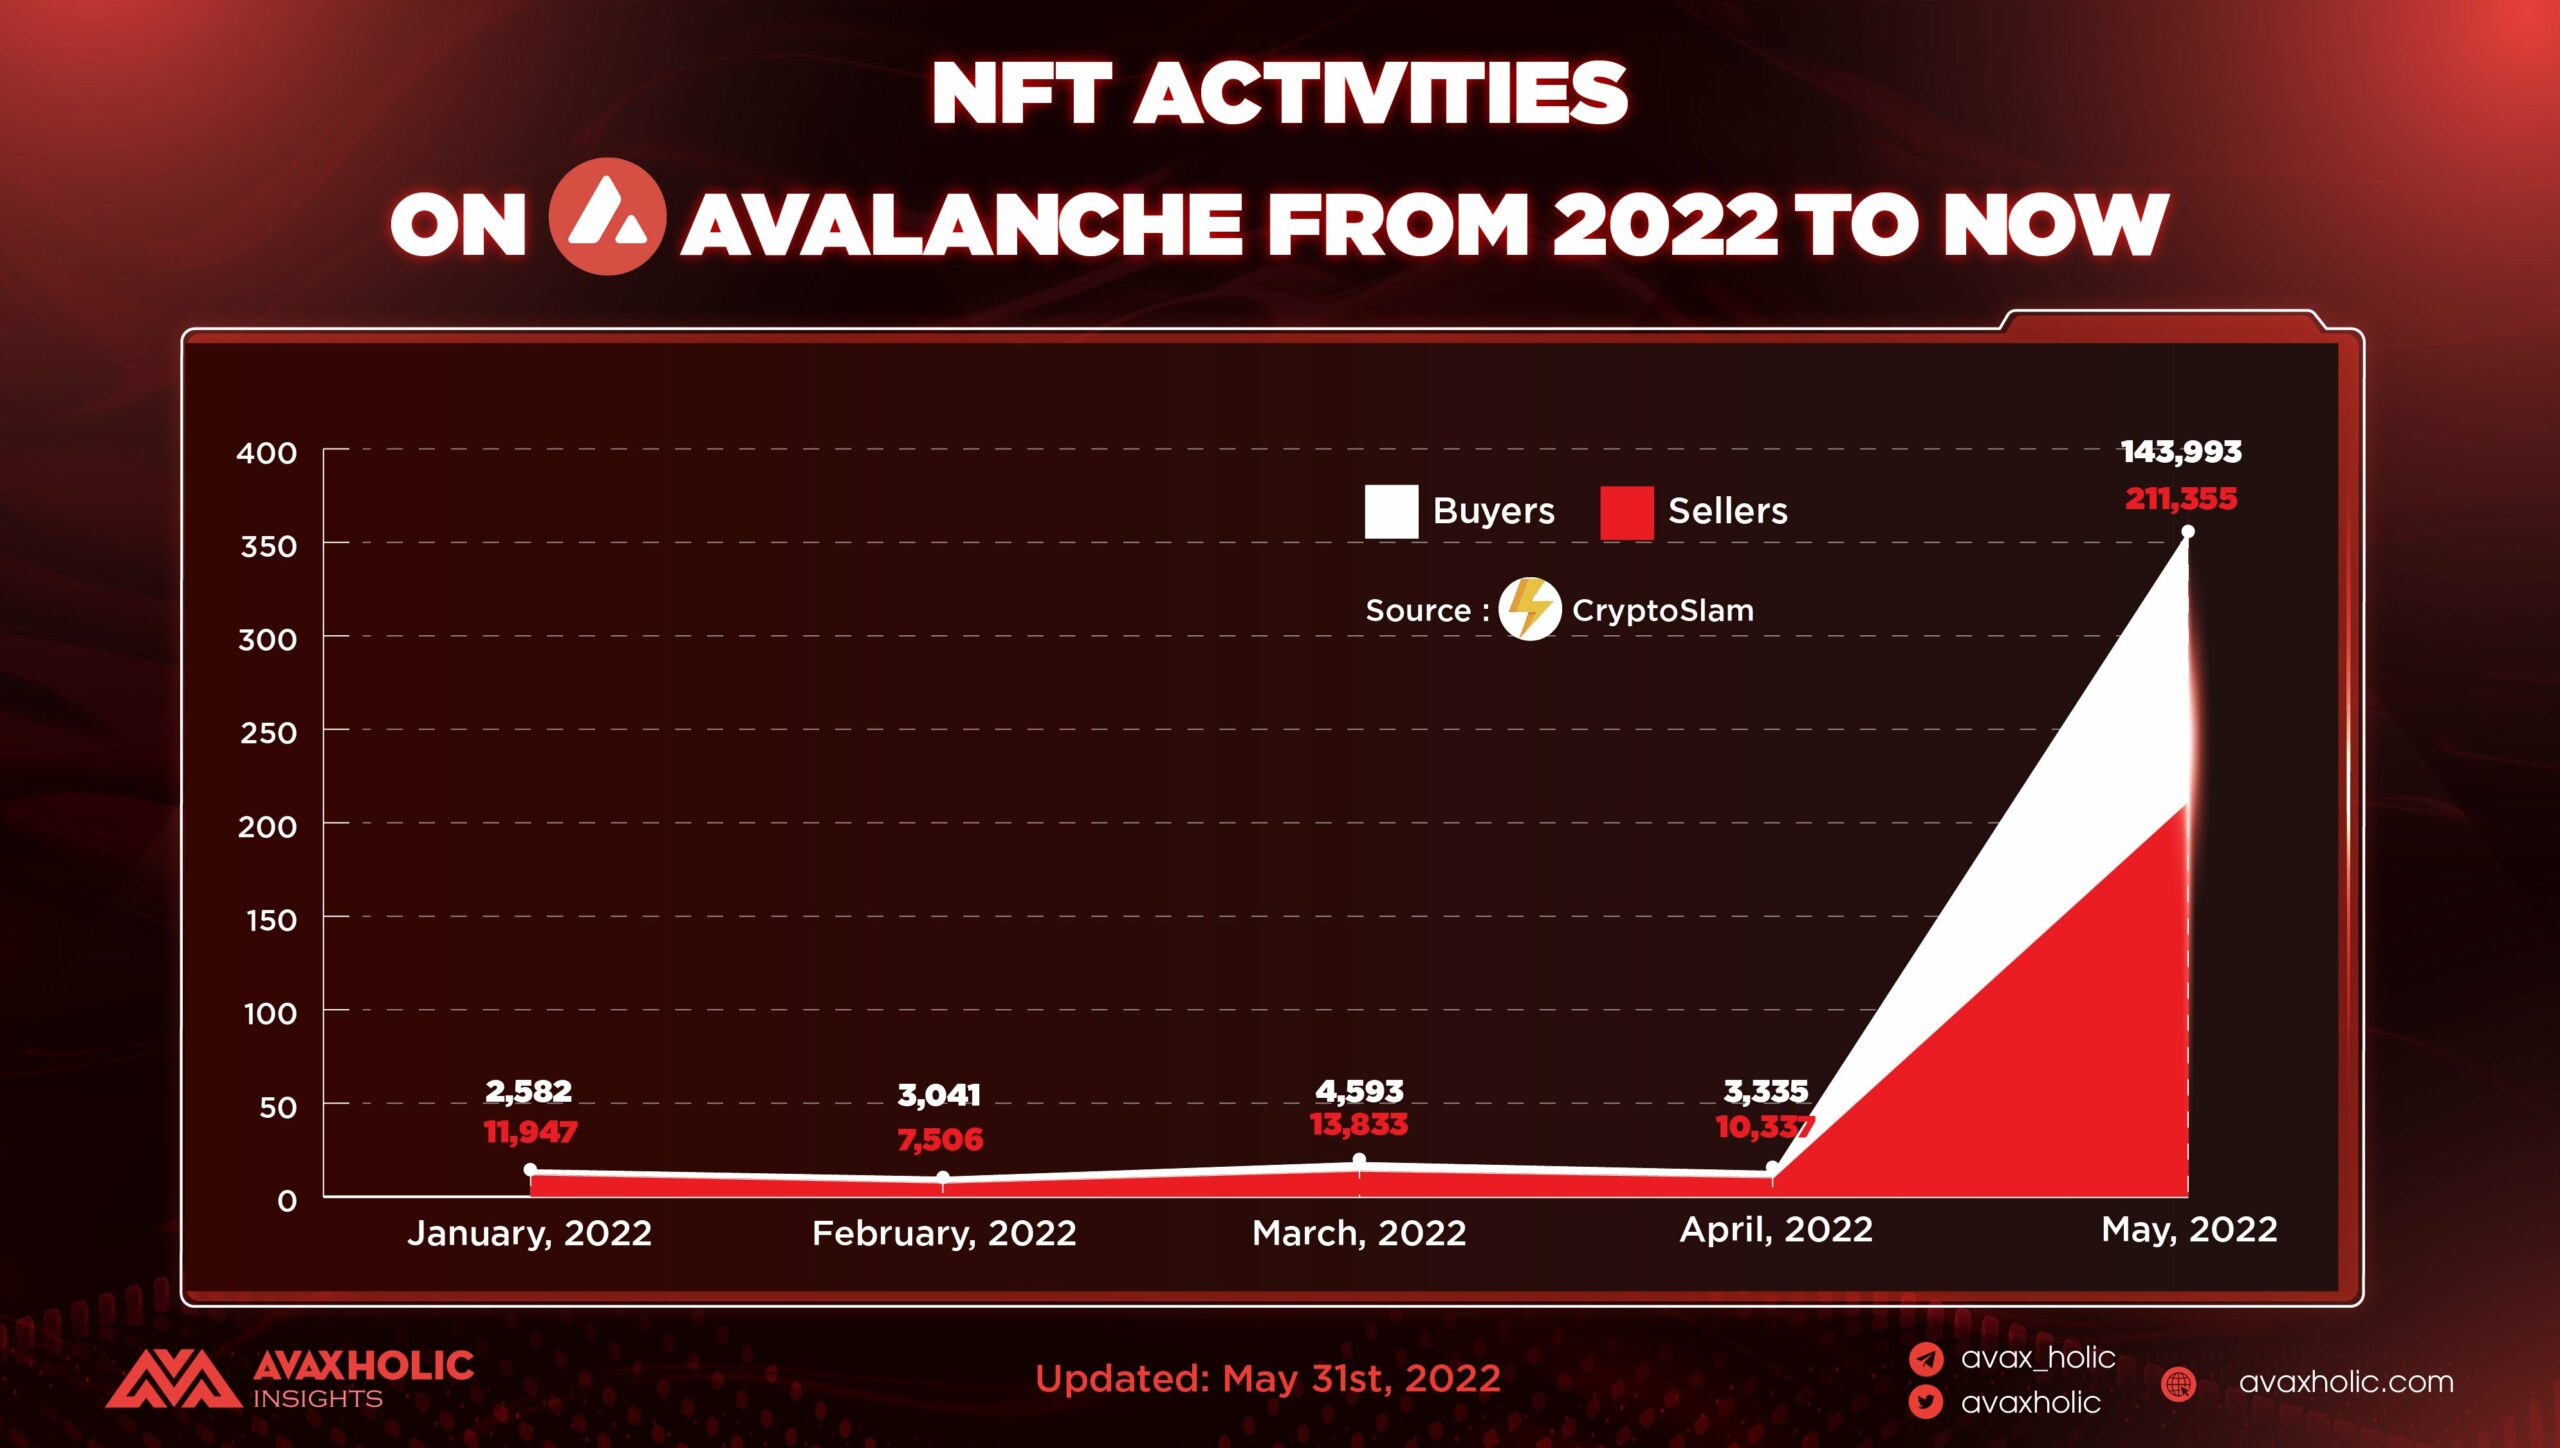 Mua bán NFT tăng mạnh so với tháng trước